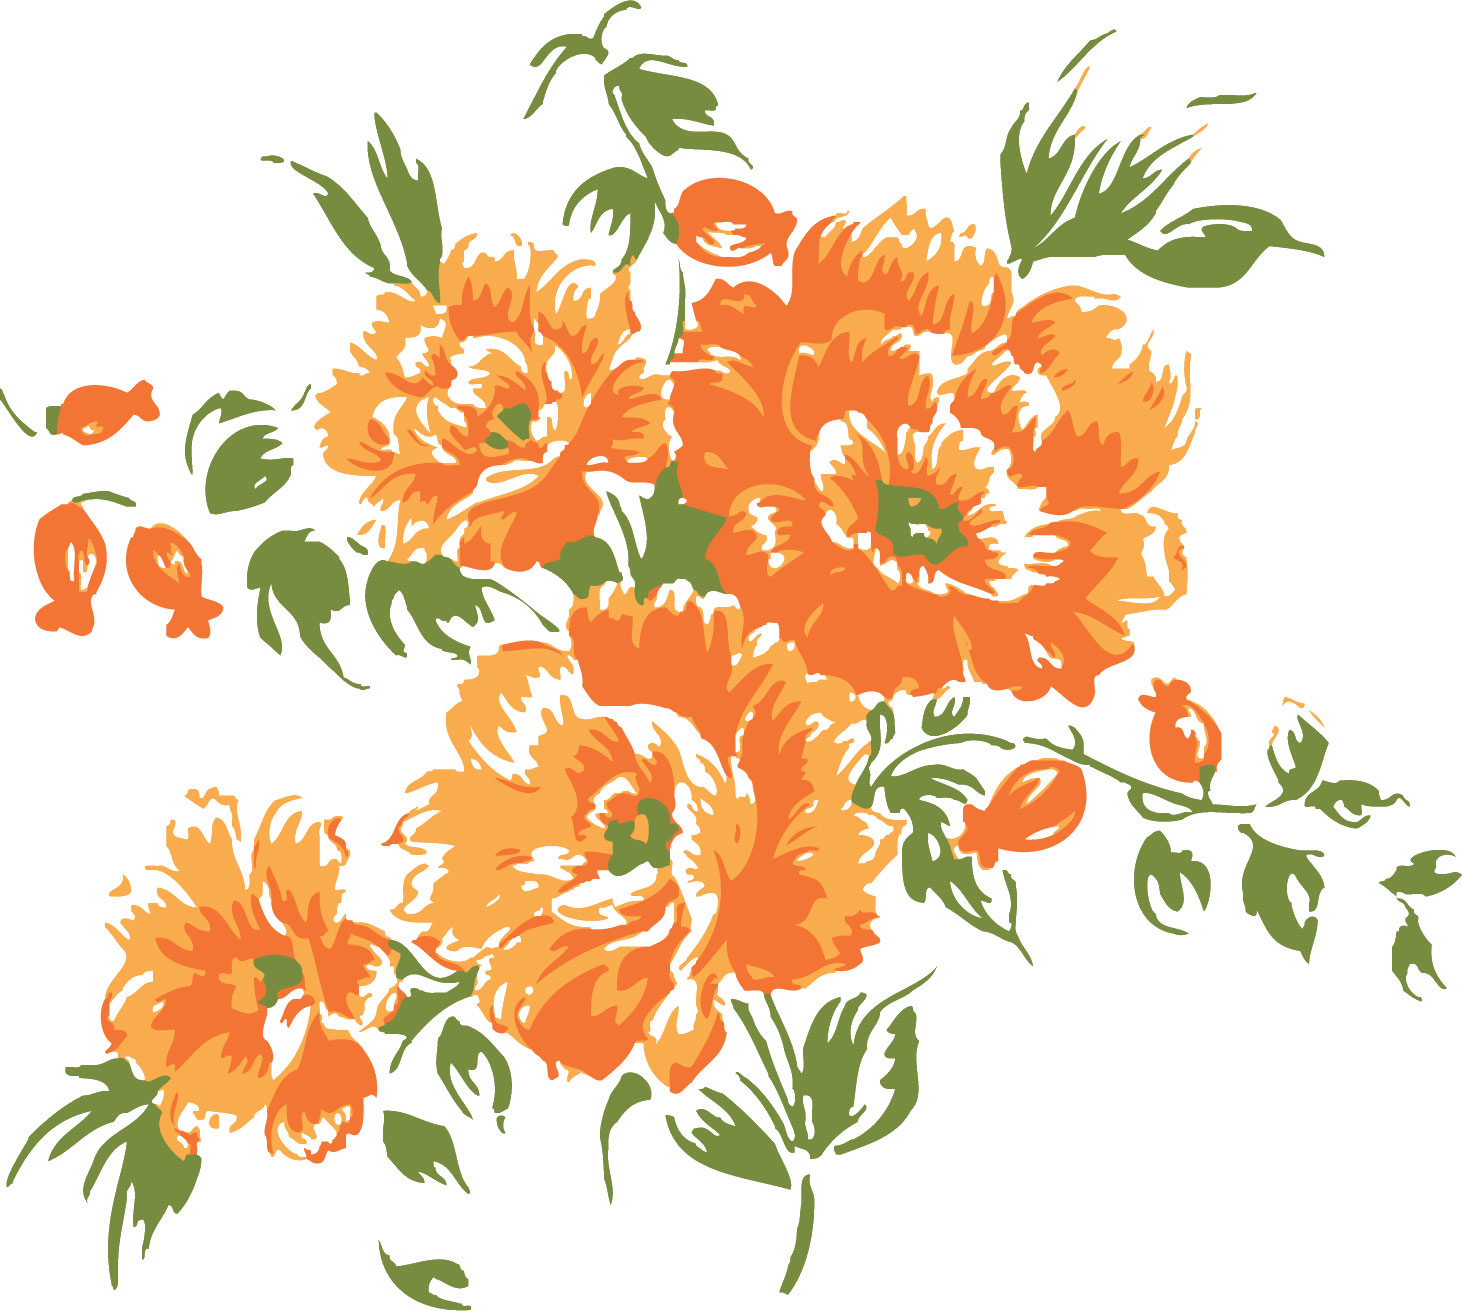 オレンジ色の花のイラスト フリー素材 No 152 オレンジ つぼみ 葉